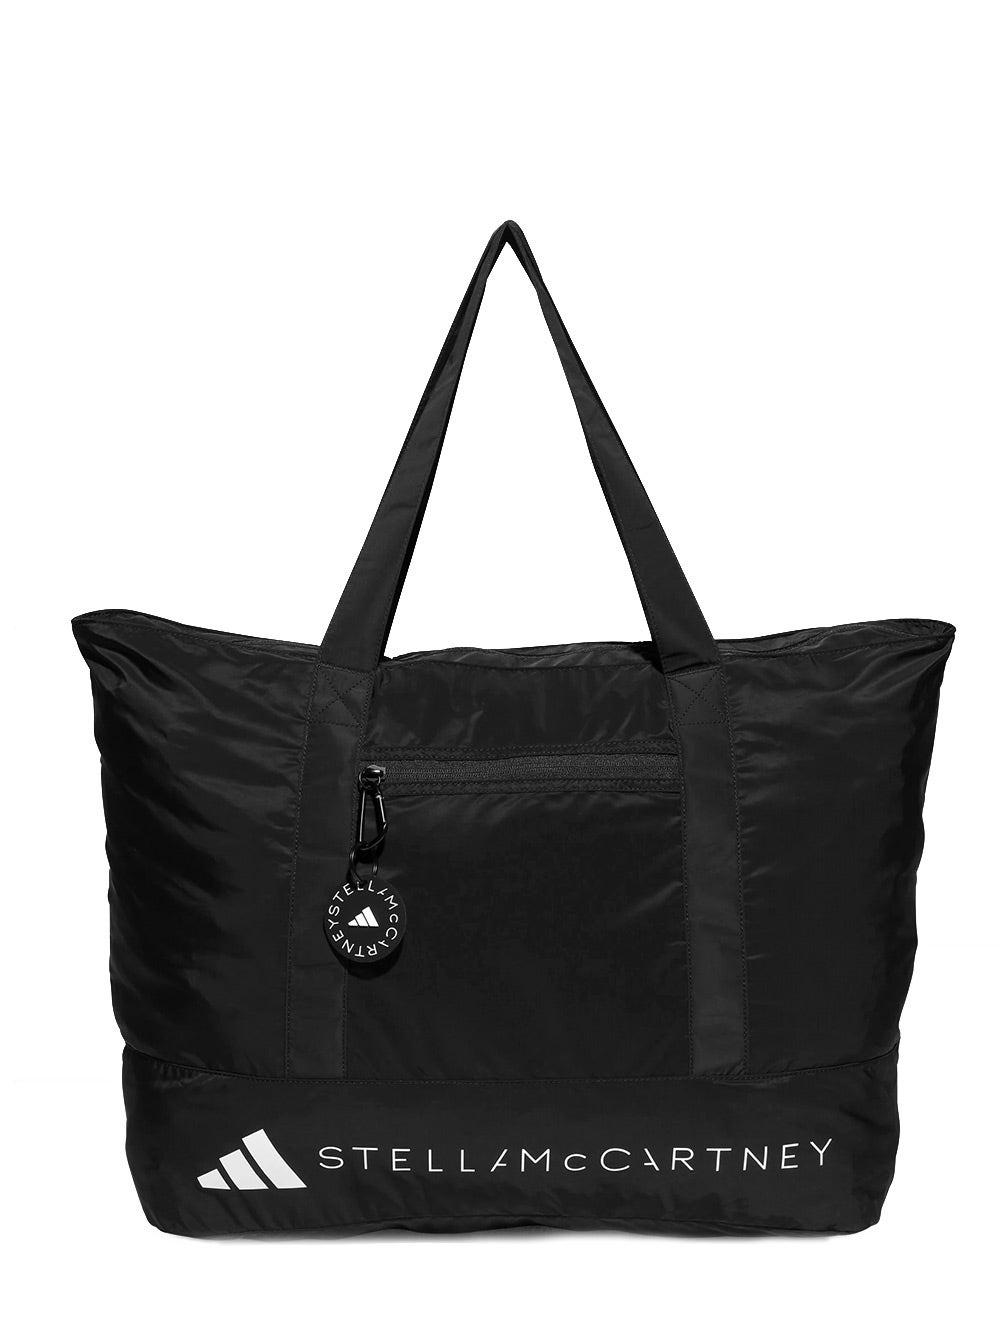 adidas By Stella McCartney By Stella Mccartney Tote in Black | Lyst